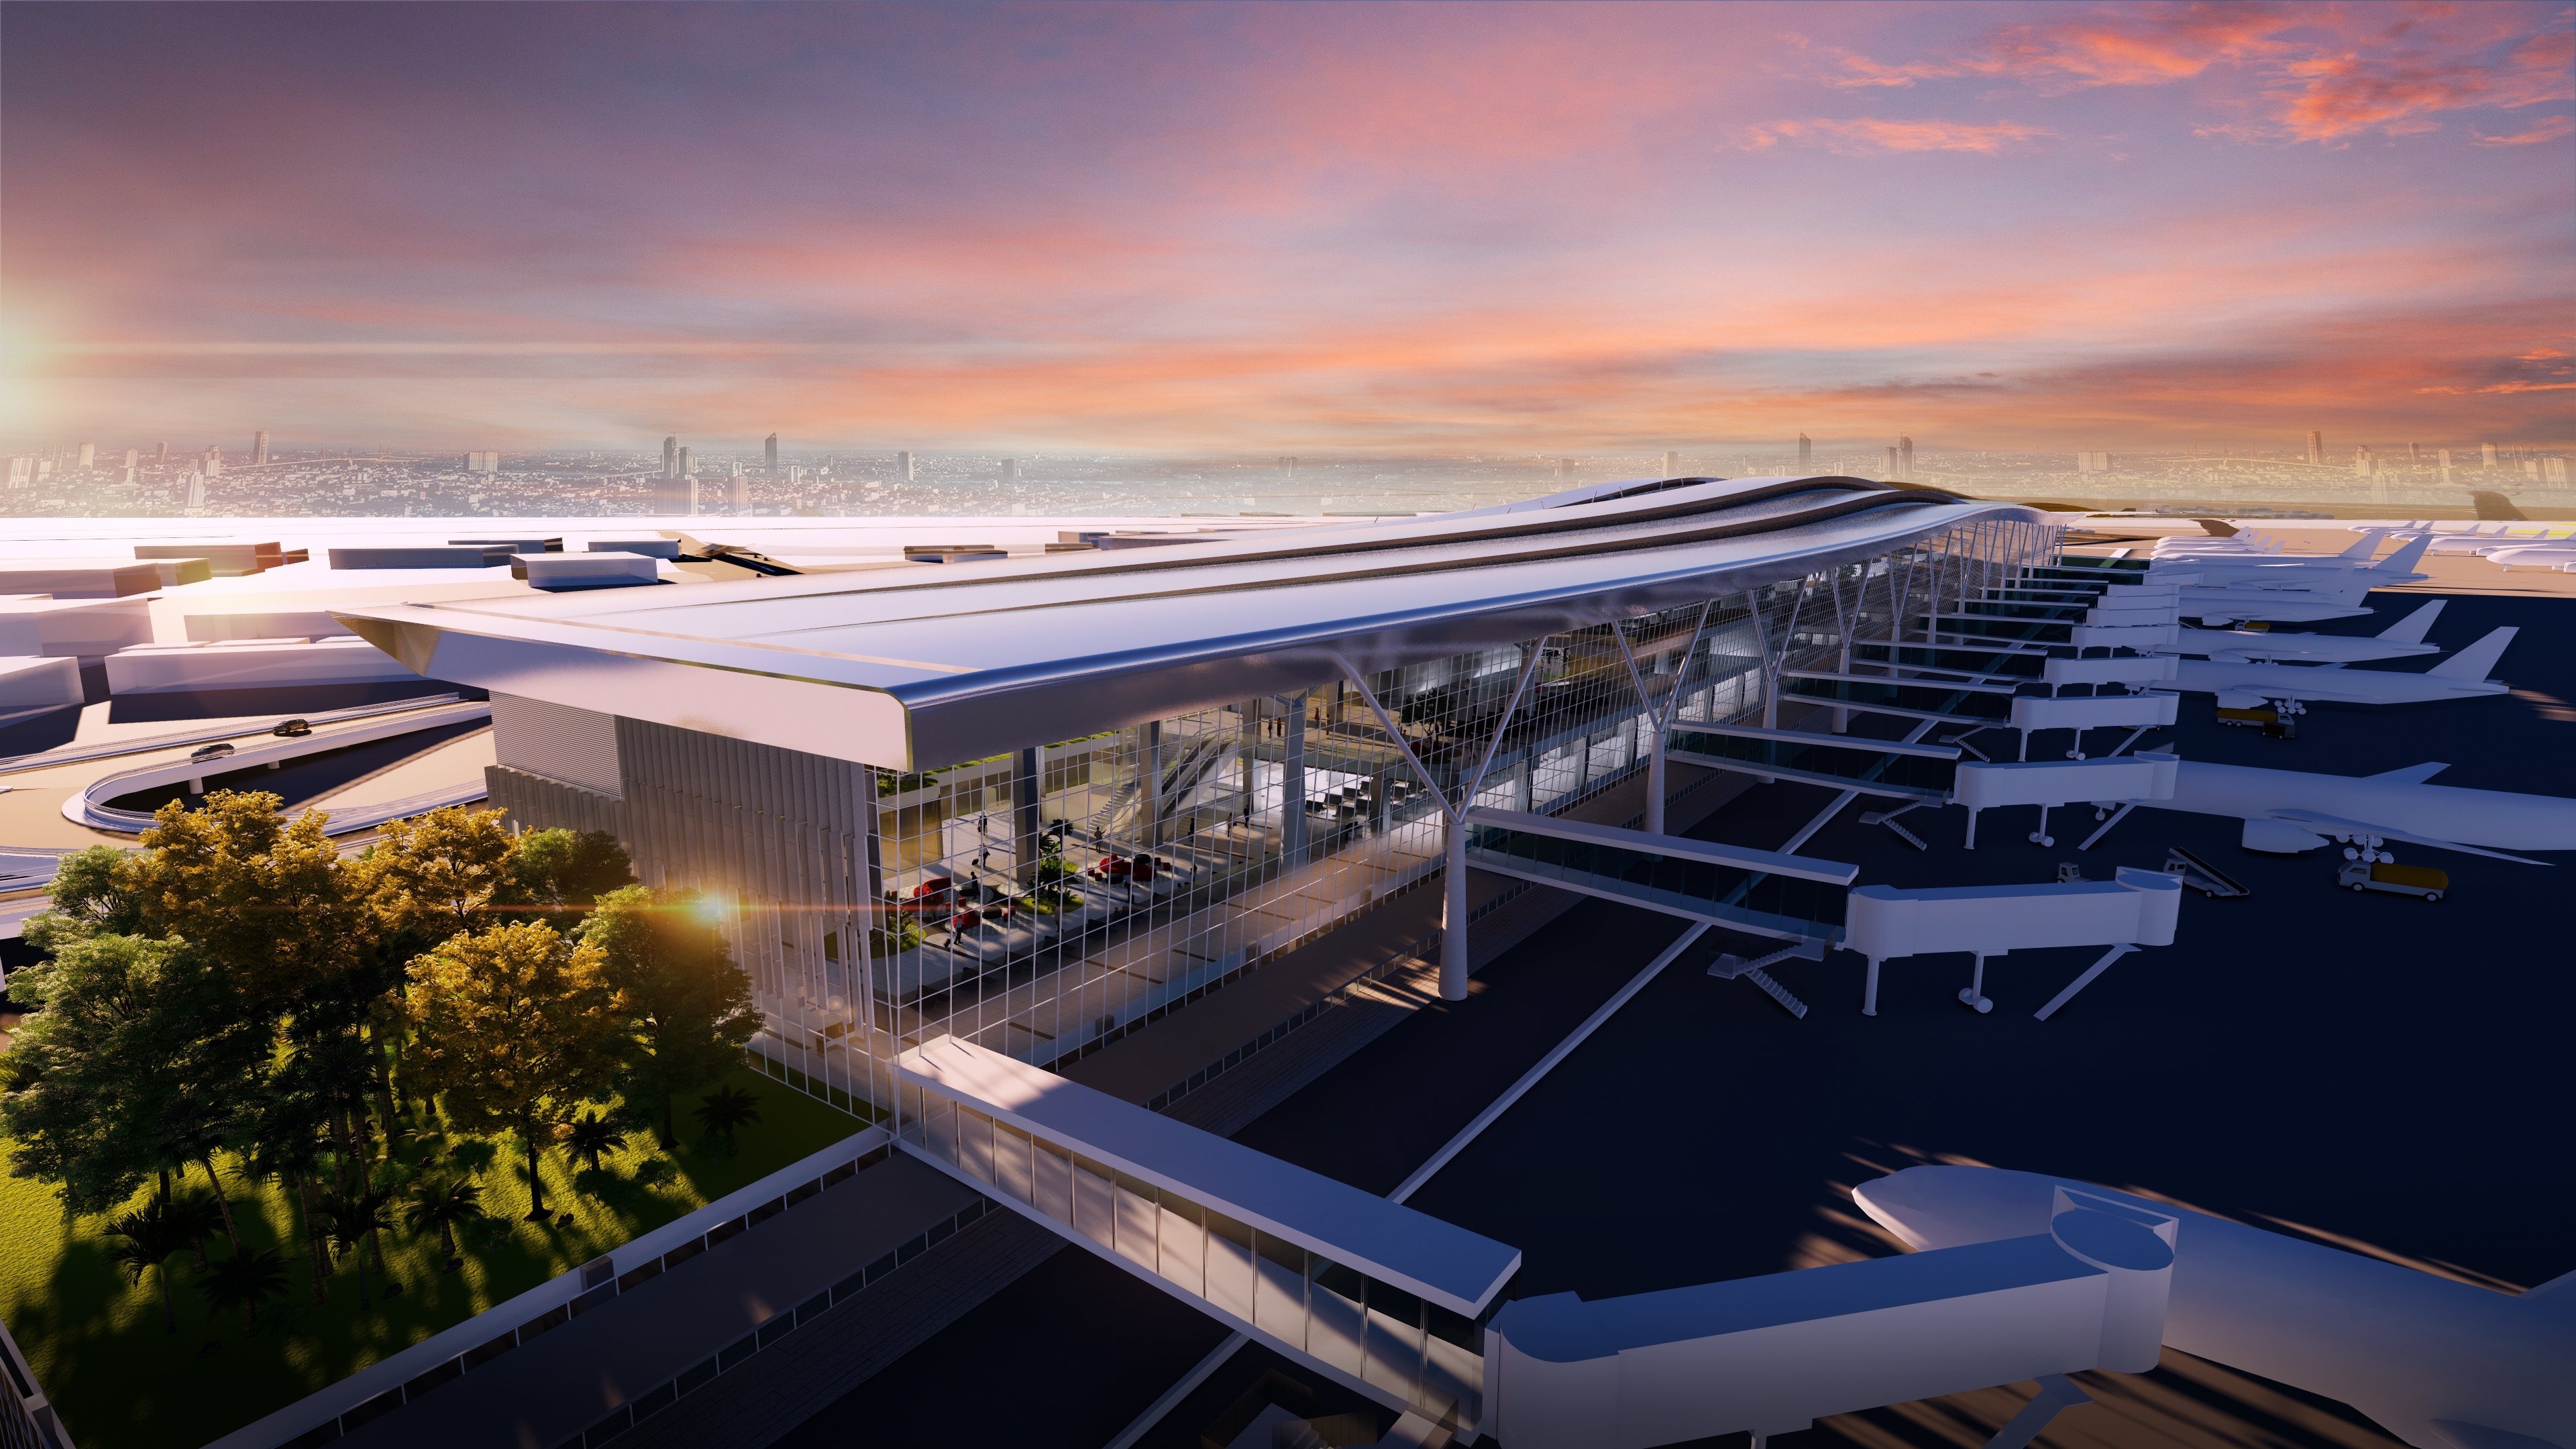 Sân đỗ máy bay của ga T3 rộng 4.670 m2, gồm đường nội bộ, bãi xe, hệ thống giao thông kết nối với nhà ga T1, T2 và hệ thống kỹ thuật. Ảnh: ACV.